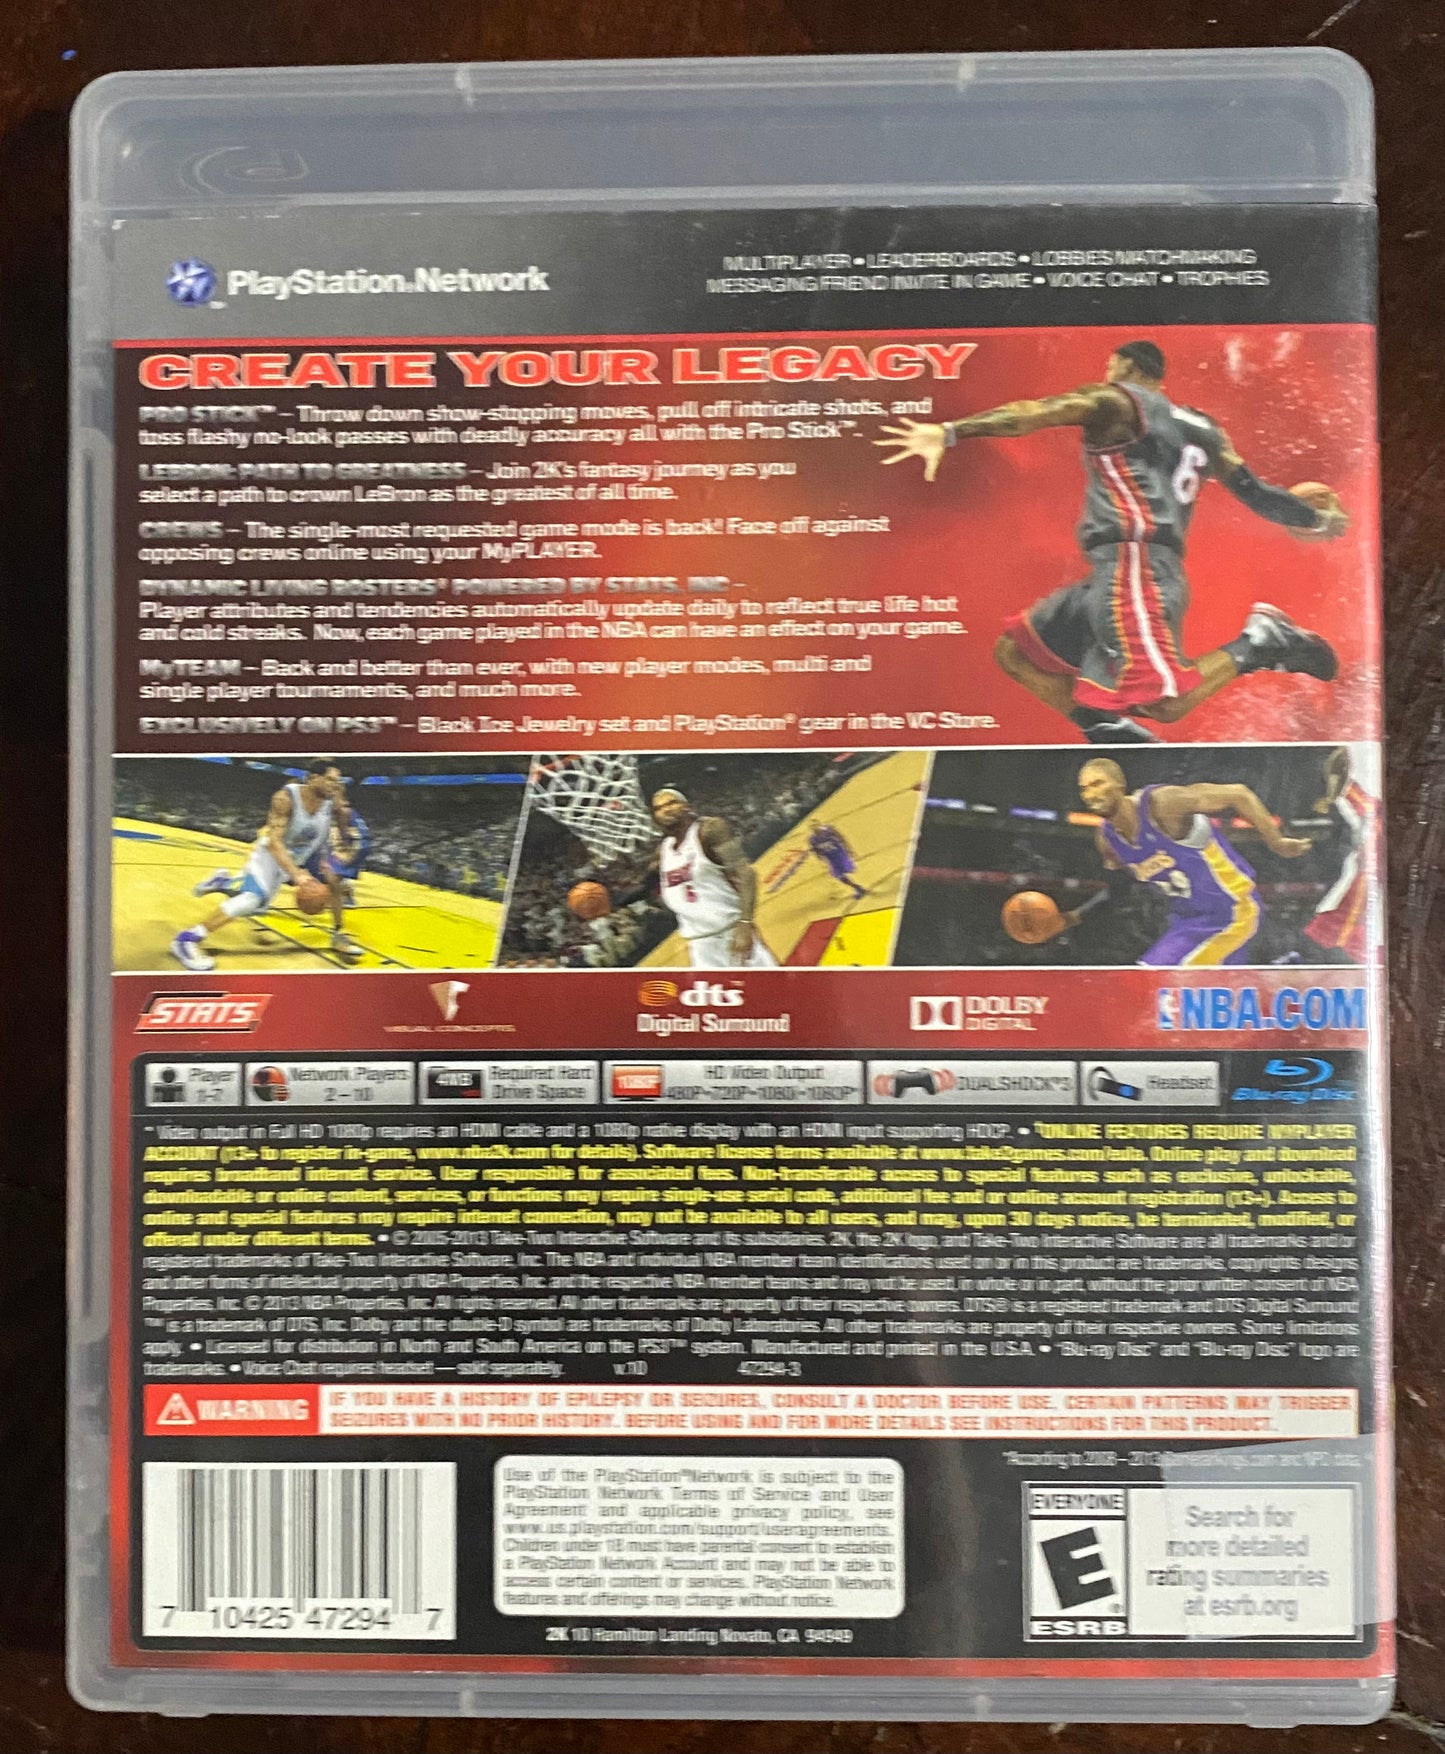 NBA 2K14 PlayStation 3 PS3 Game 47294-99